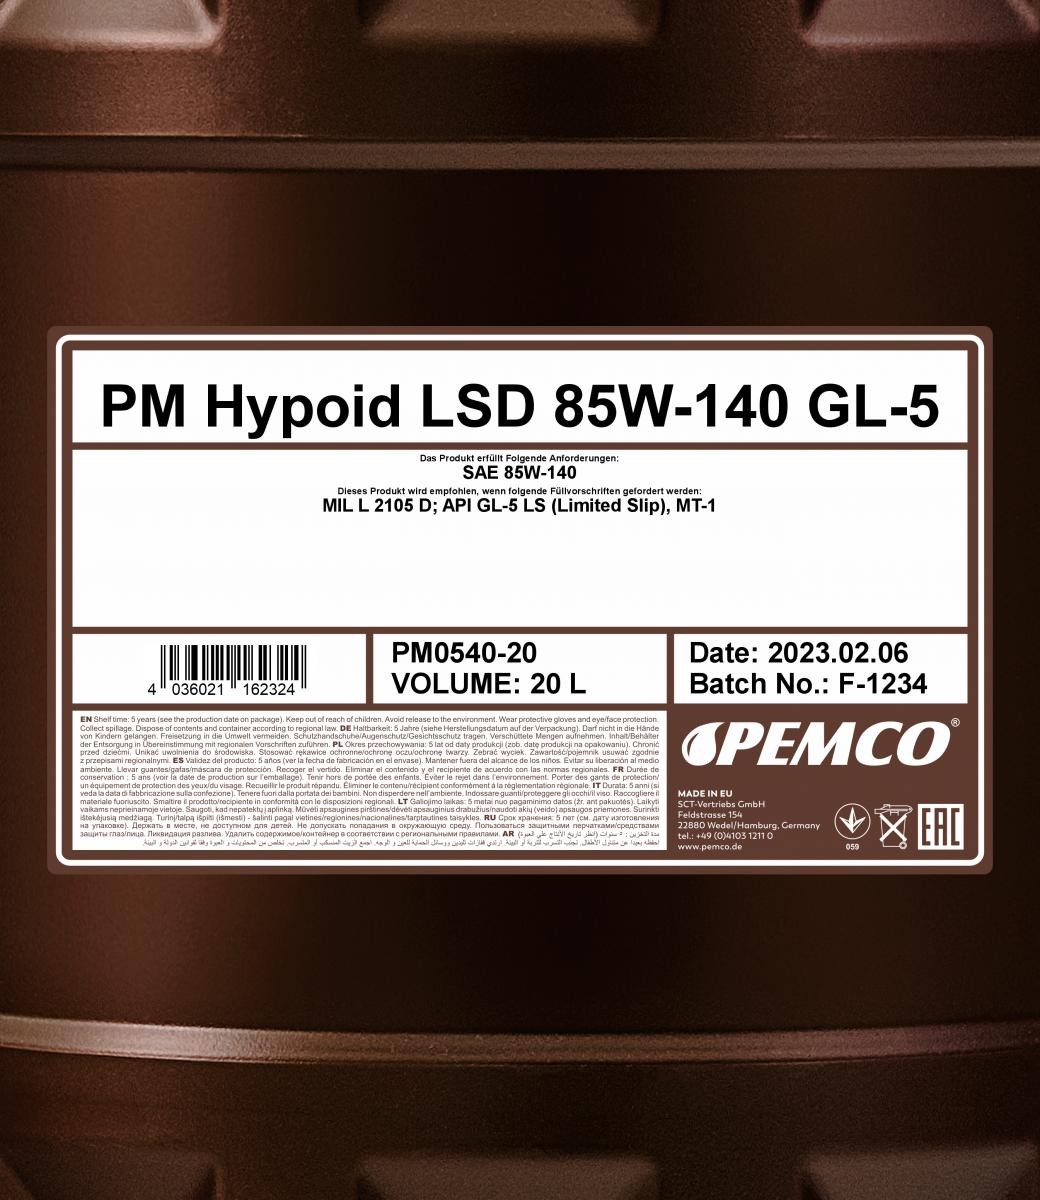 PEMCO Manual Transmission Oil PM0540-20